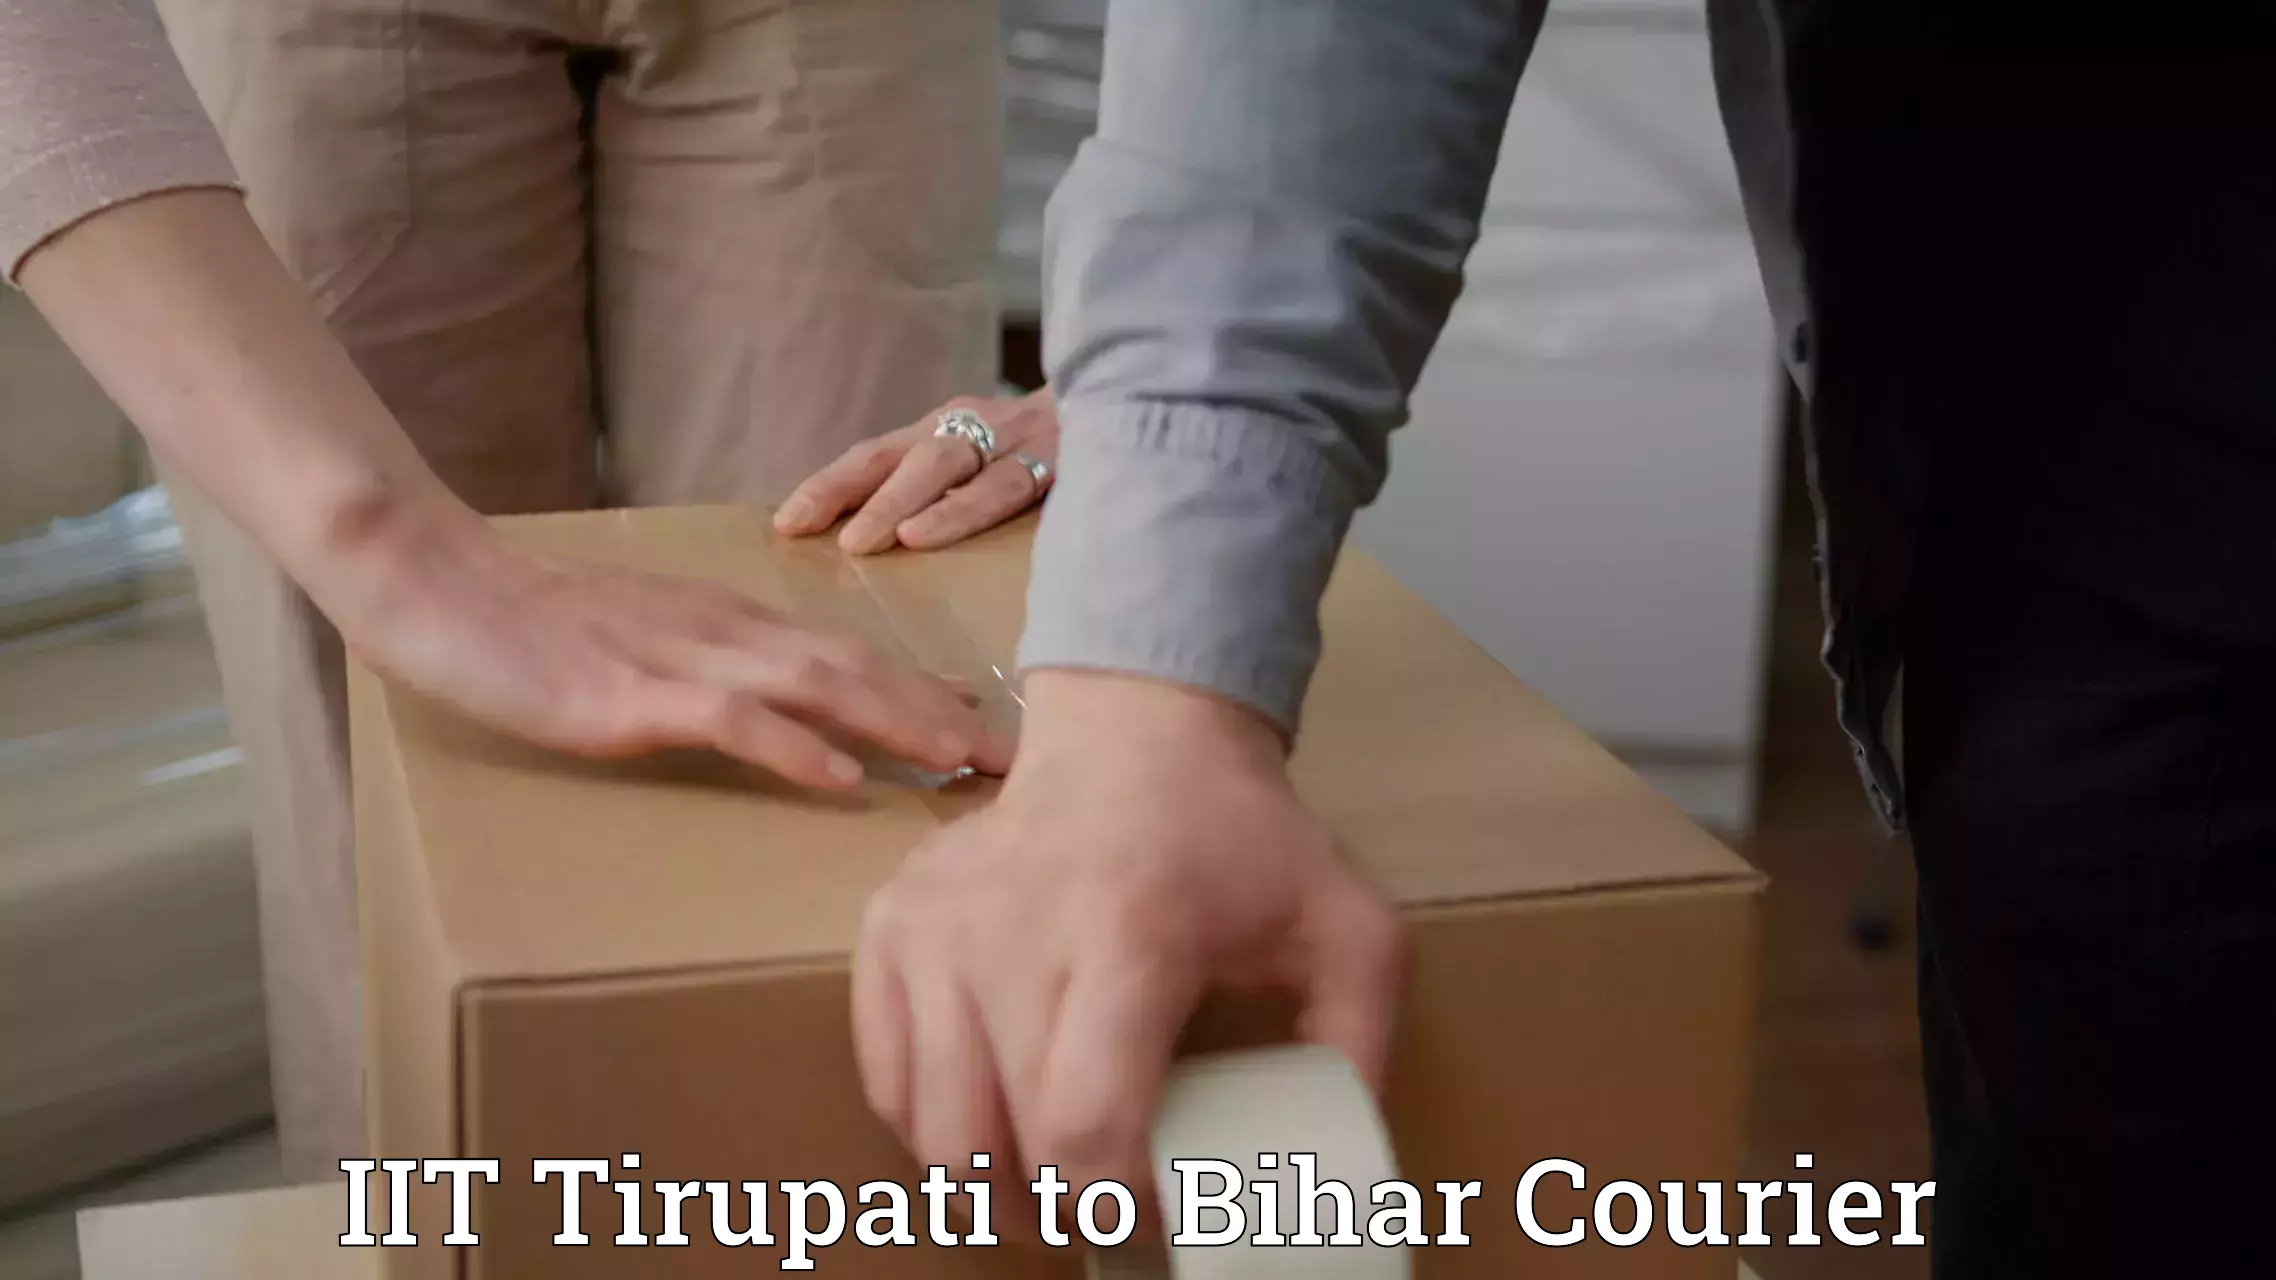 Global delivery options IIT Tirupati to Jiwdhara